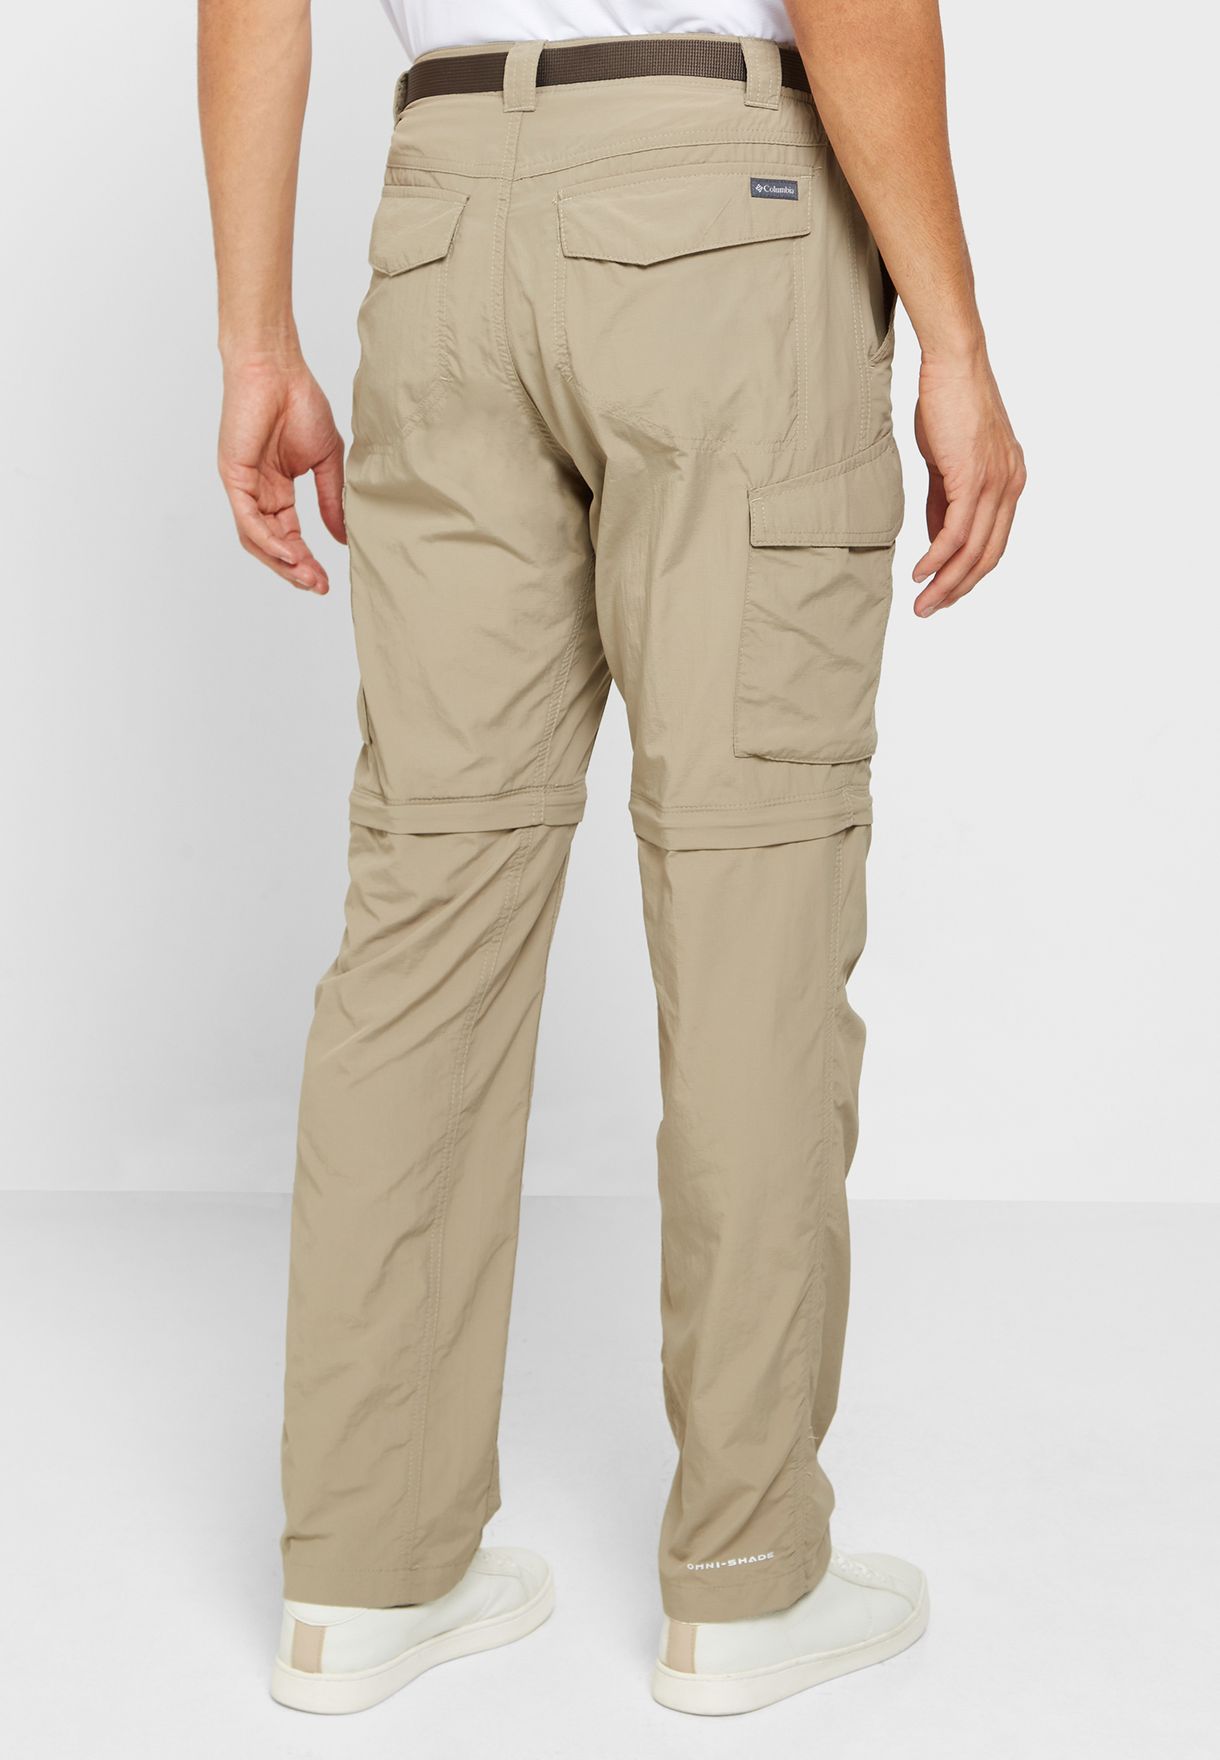 Silver Ridge Convertible Pants